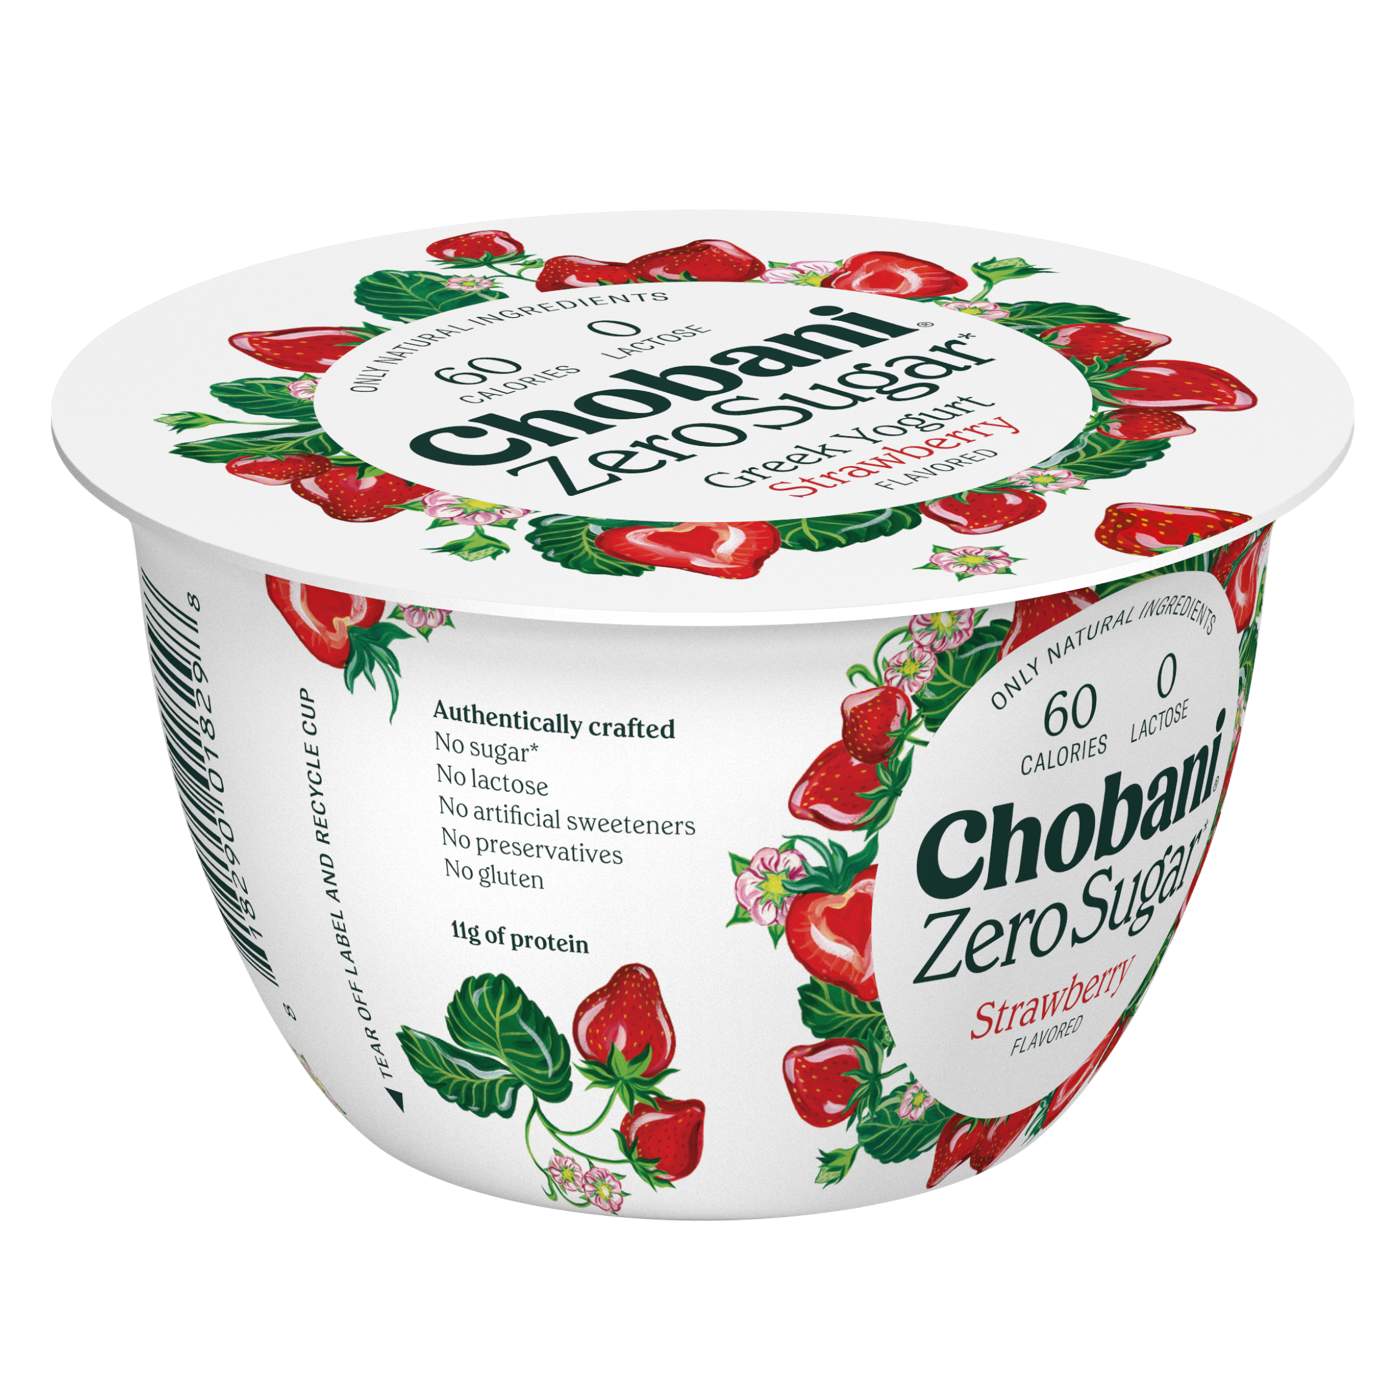 Chobani Zero Sugar Strawberry Yogurt; image 2 of 4